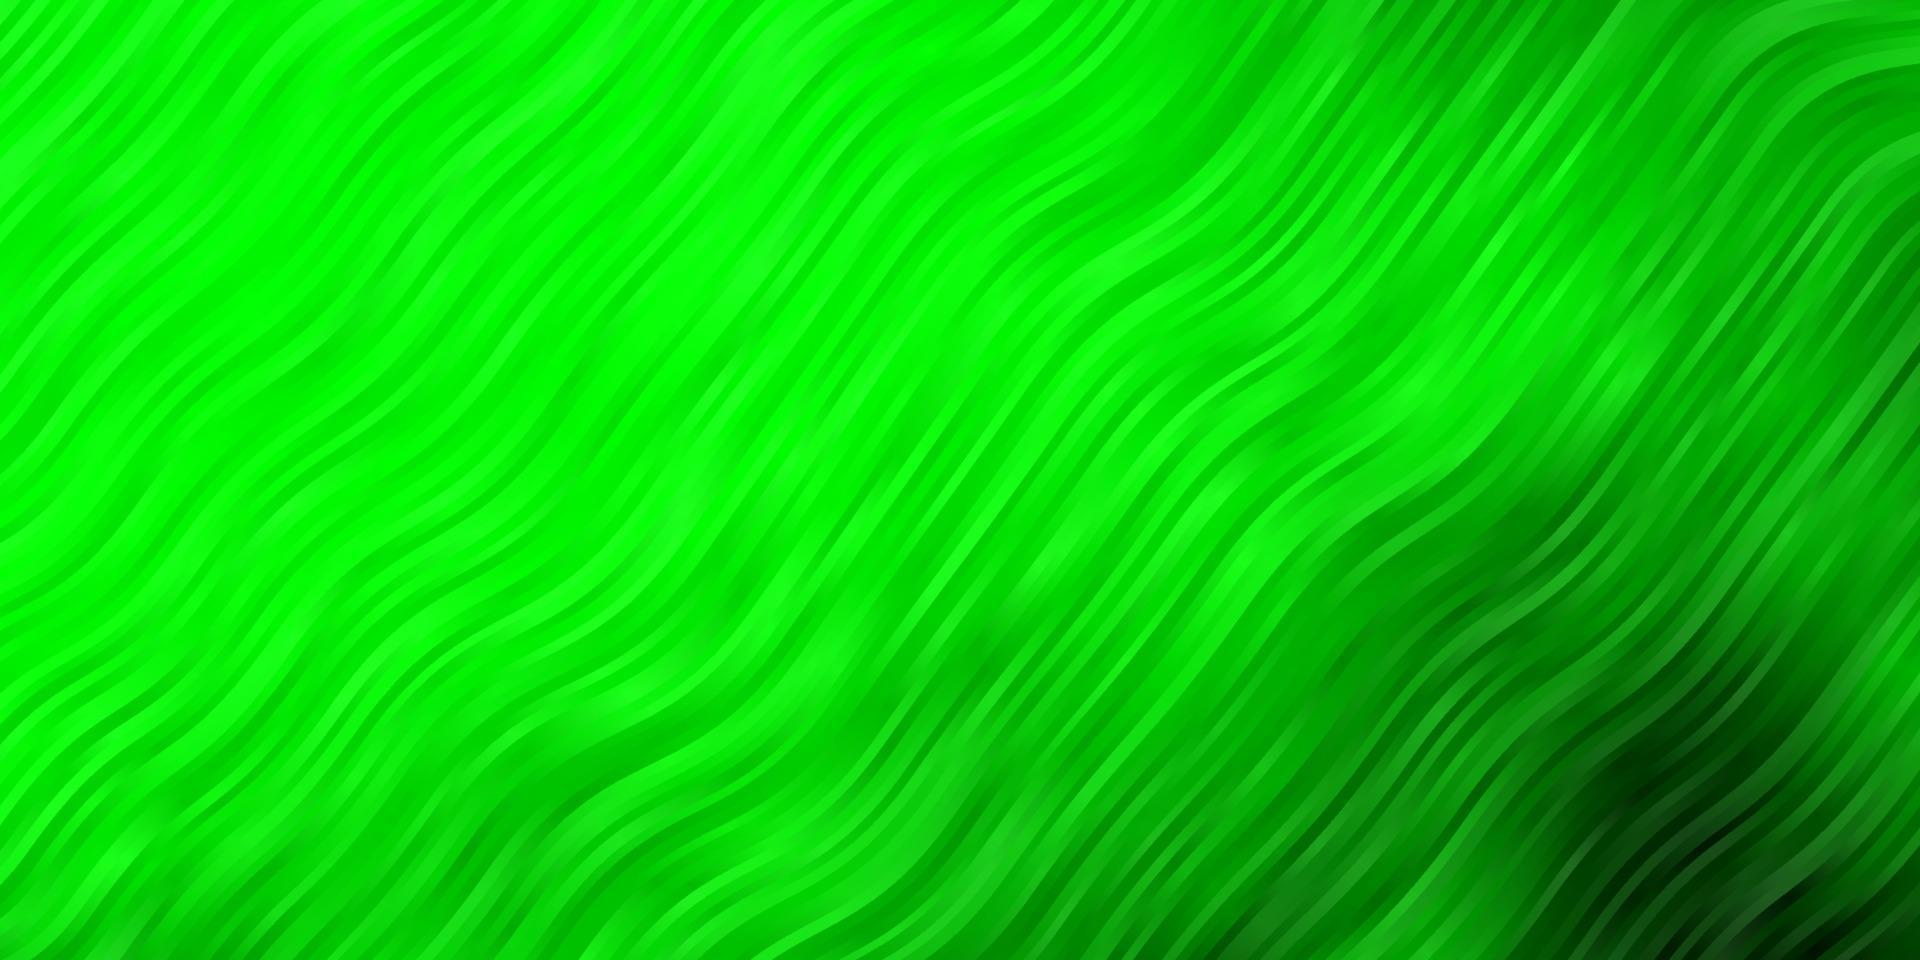 ljusgrön vektorbakgrund med bågar. vektor